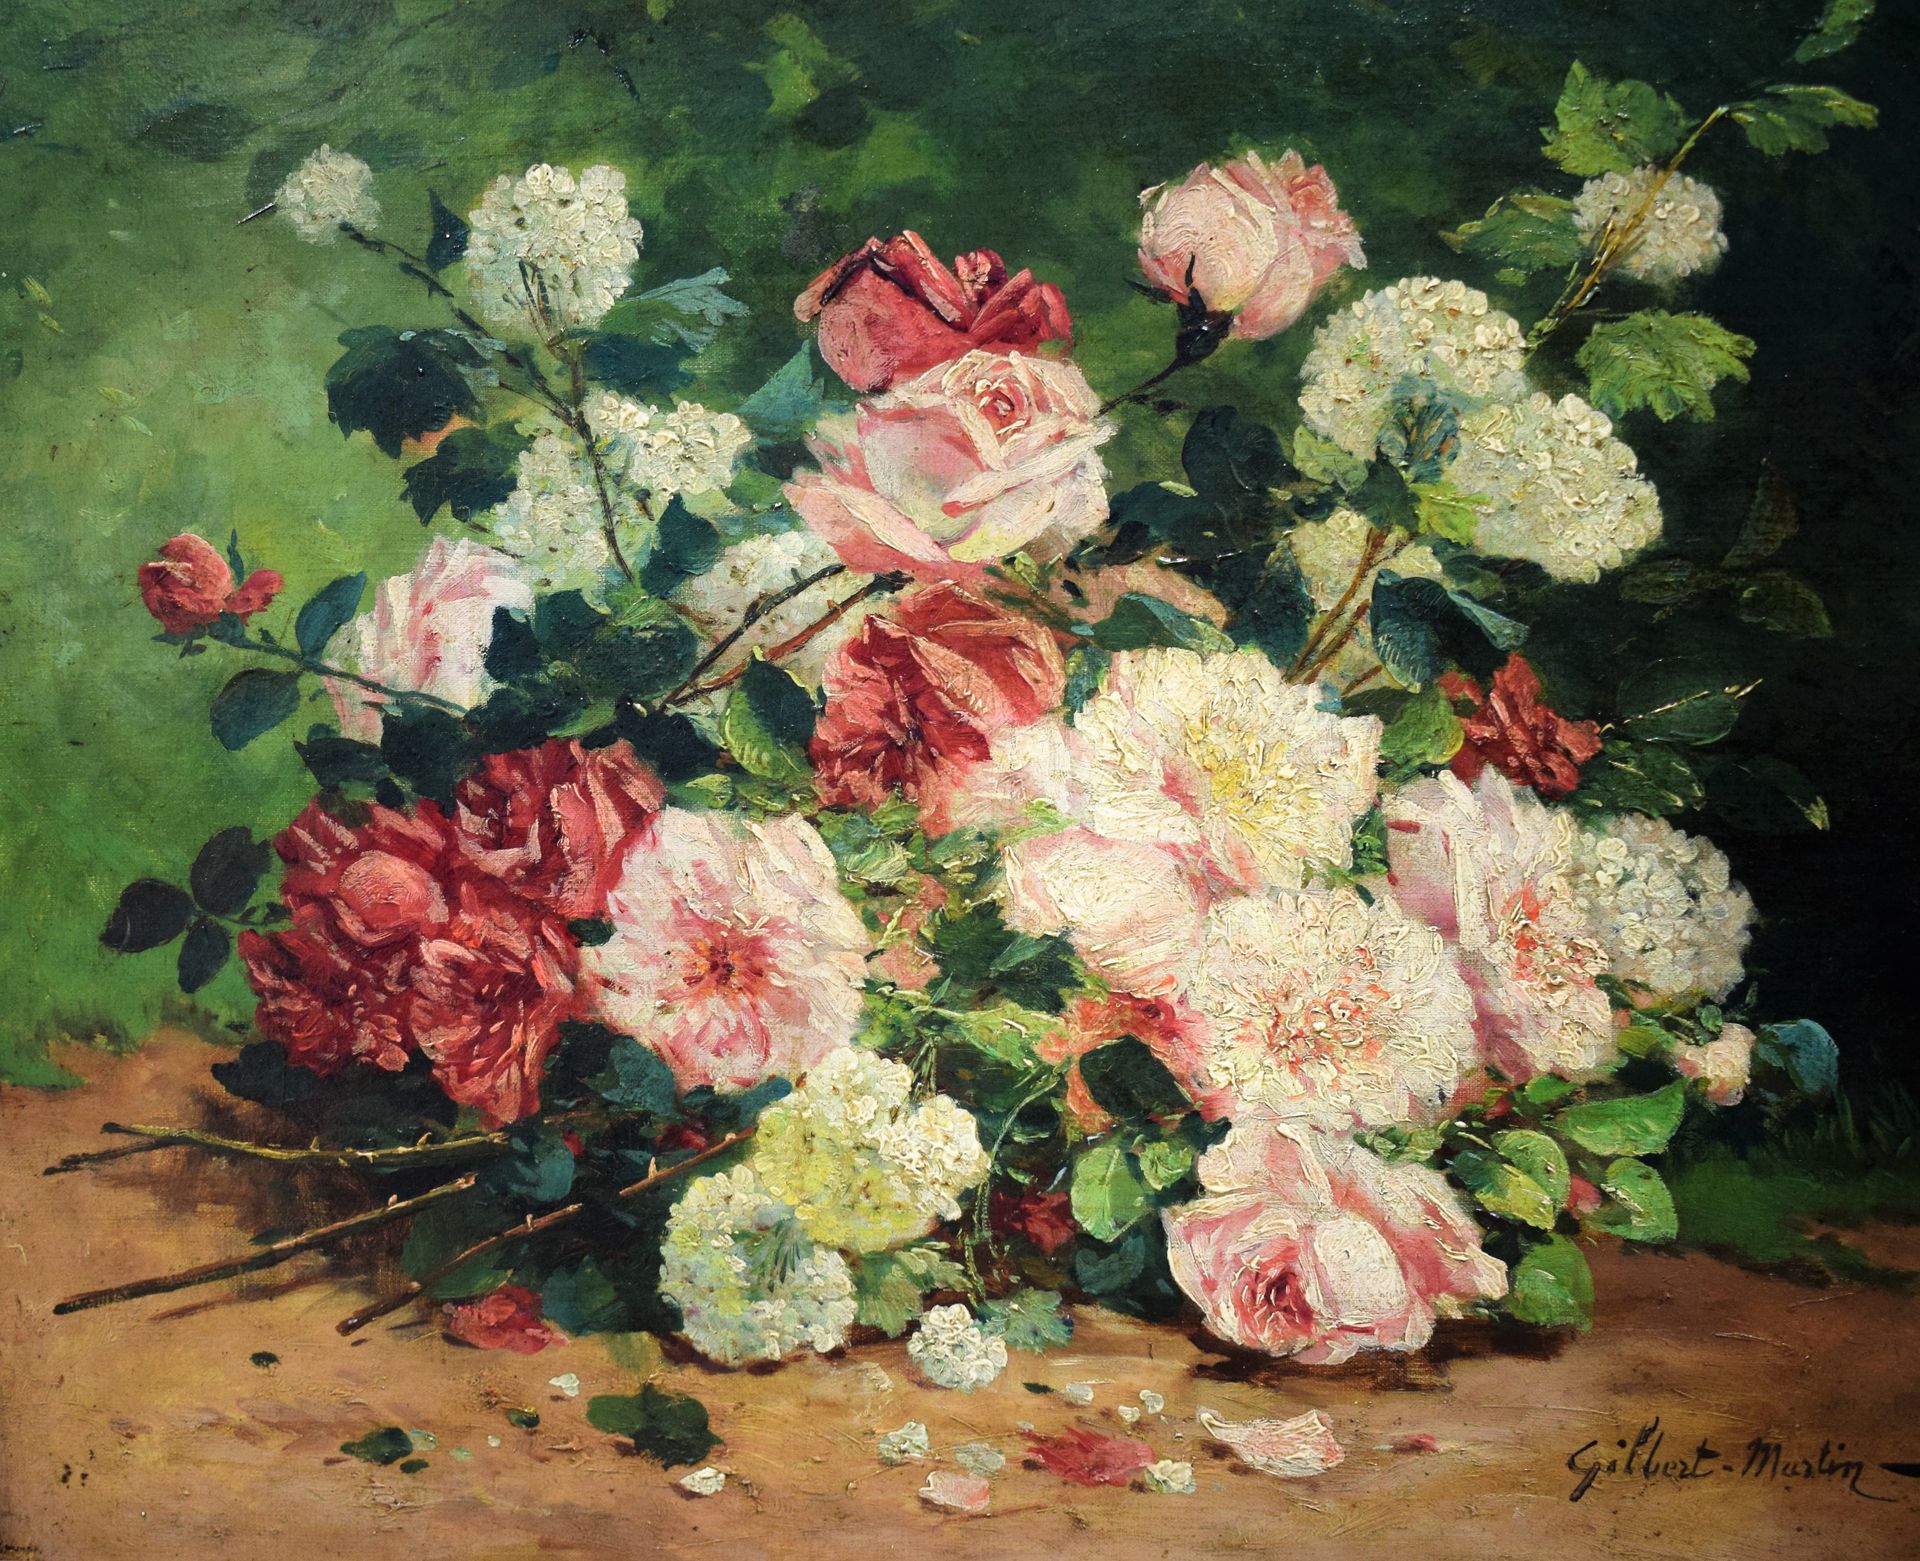 Null 查尔斯-吉尔伯特-马丁 (1839-1905)

一束花的静物

布面油画

右下方有签名

50 x 61厘米

|

查尔斯-吉尔伯特-马丁 (1&hellip;